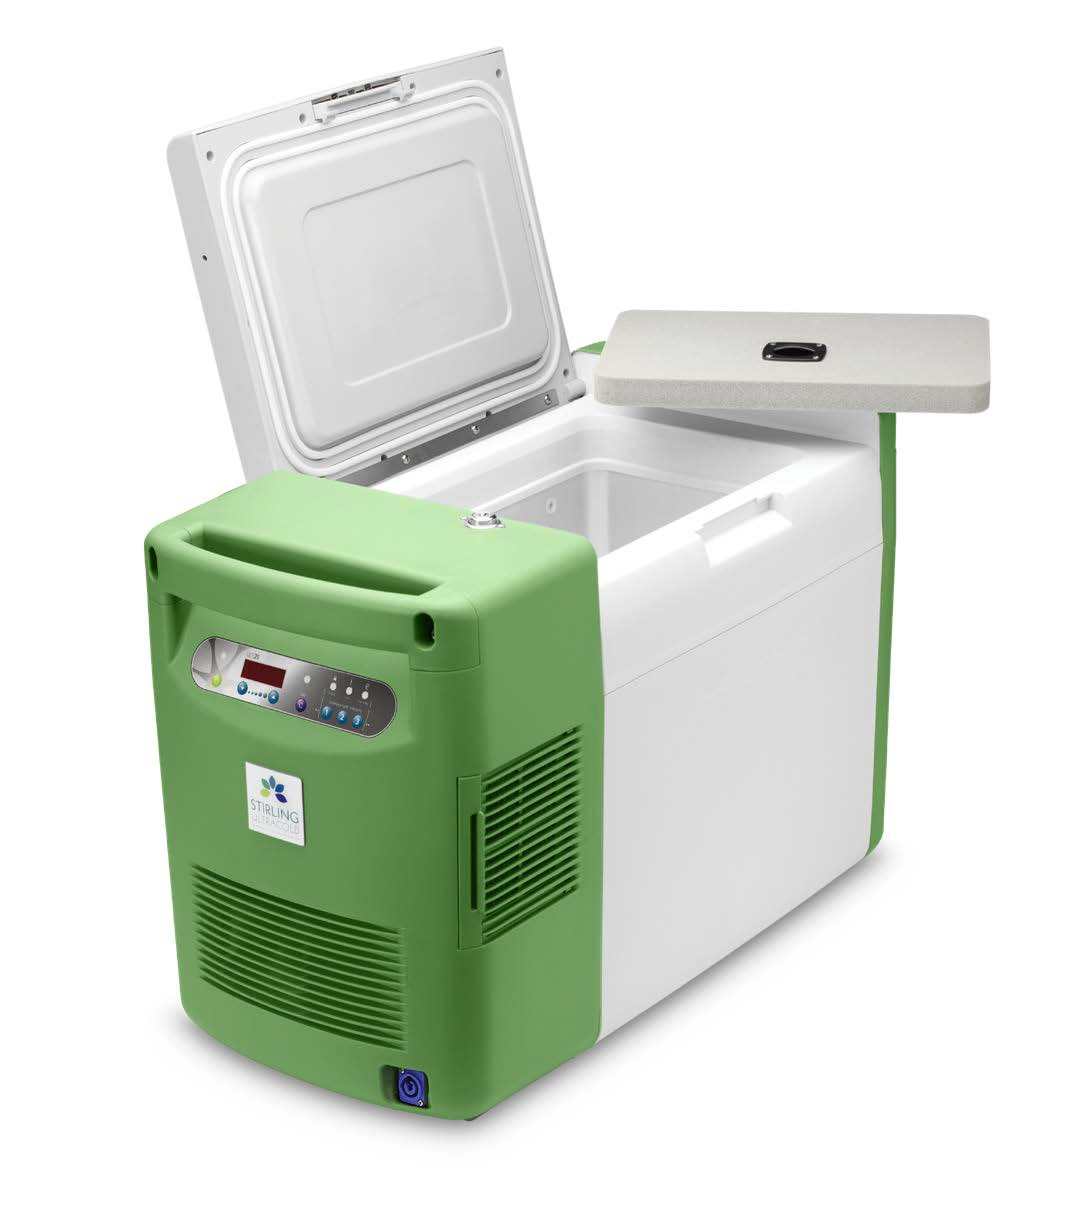 美国Stirling便携式超低温( -20～-86℃)冰箱ULT25NEU上海默西科学仪器有限公司